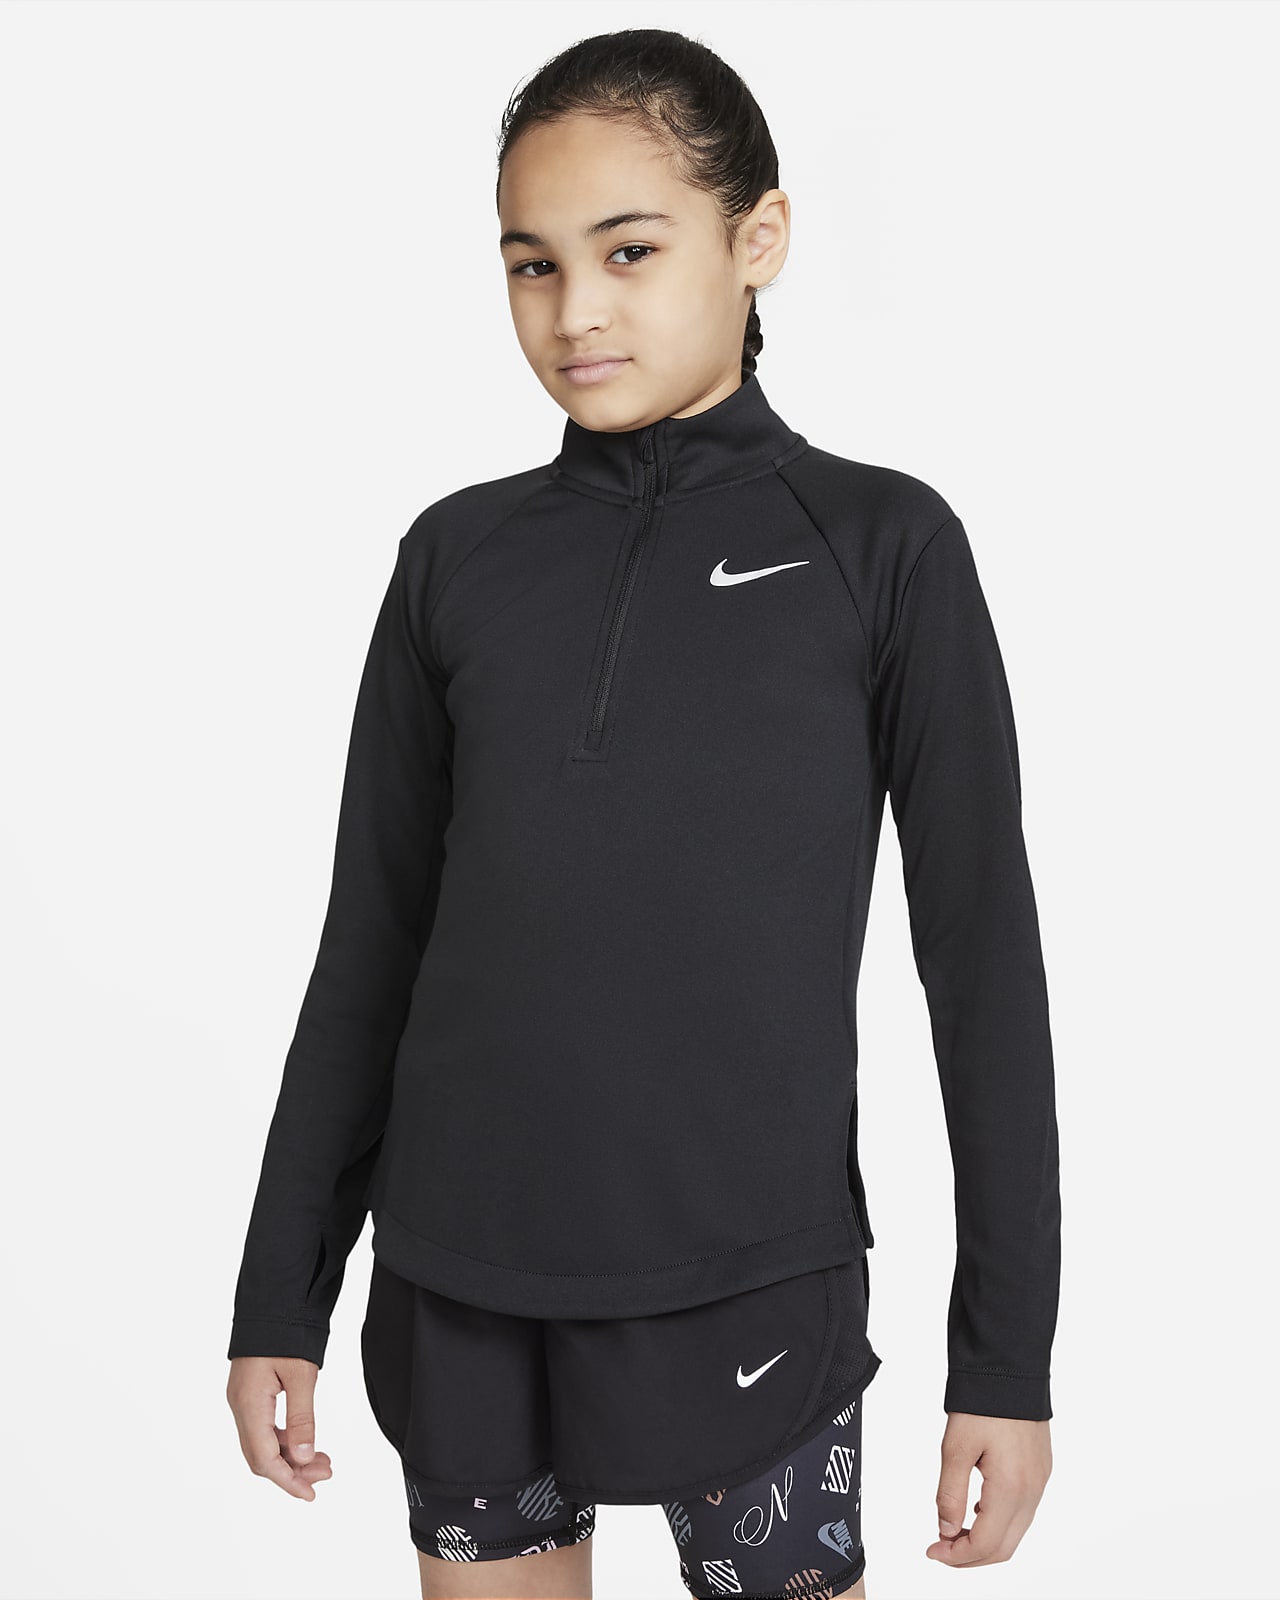 Nike Dri-FIT Uzun Kollu Genç Çocuk (Kız) Koşu Üstü